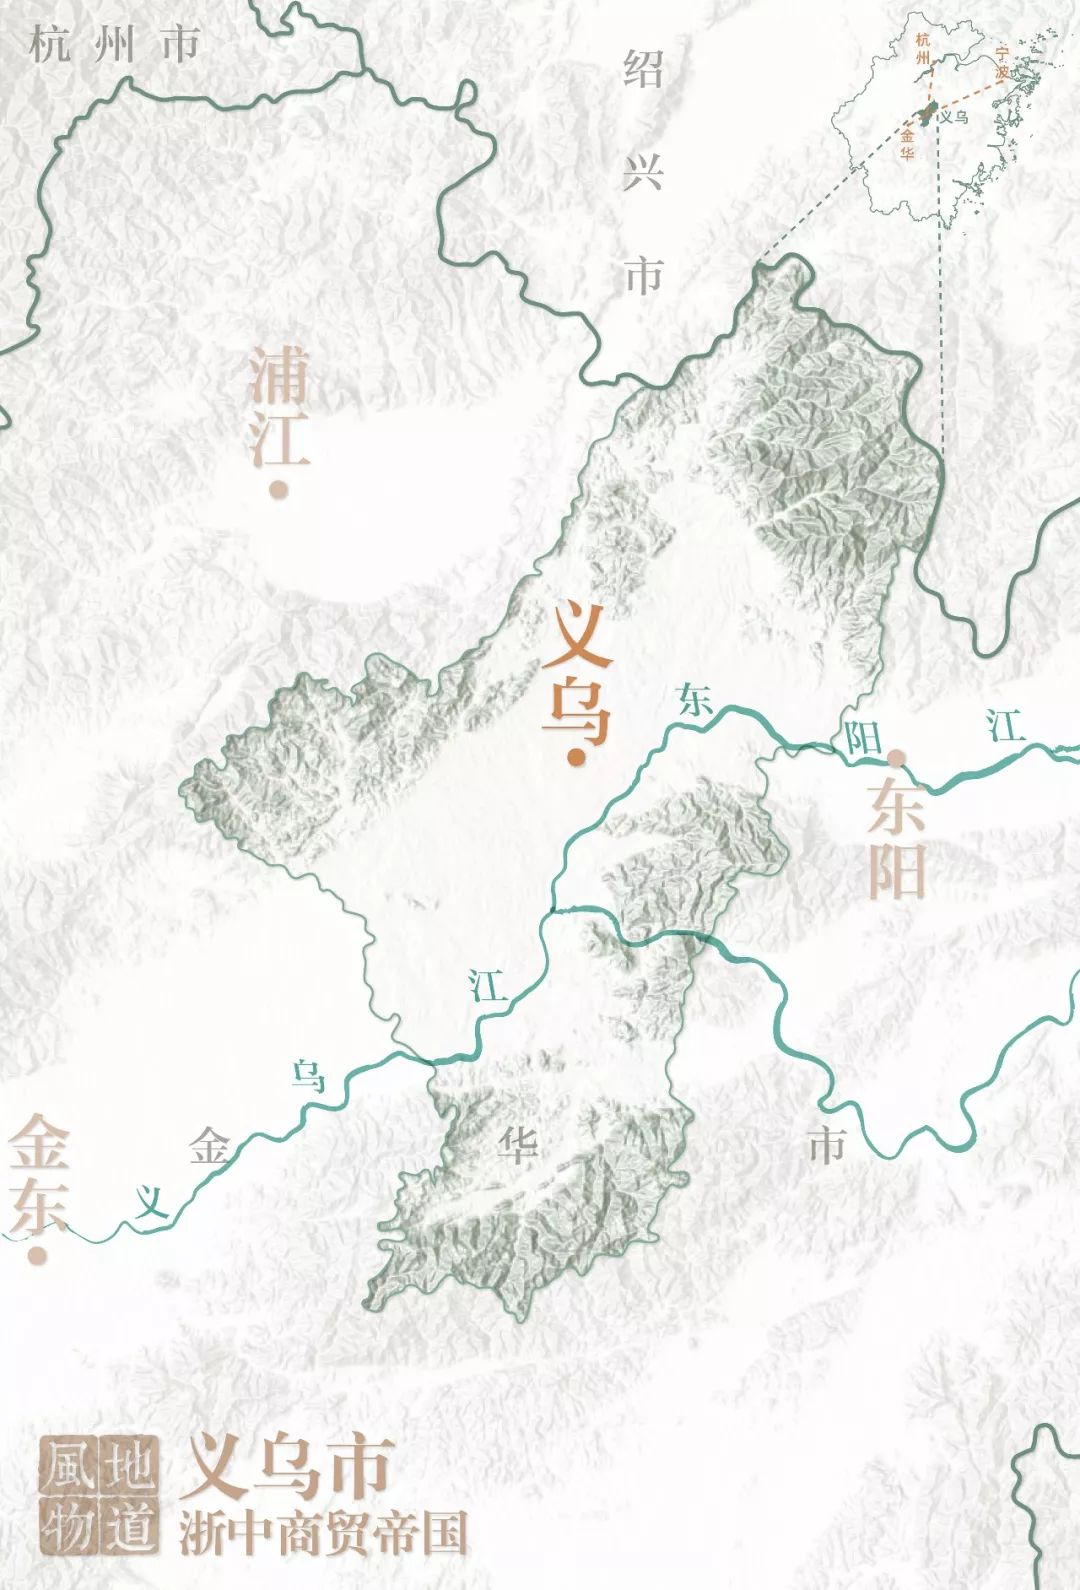 浙江义乌地理位置图图片